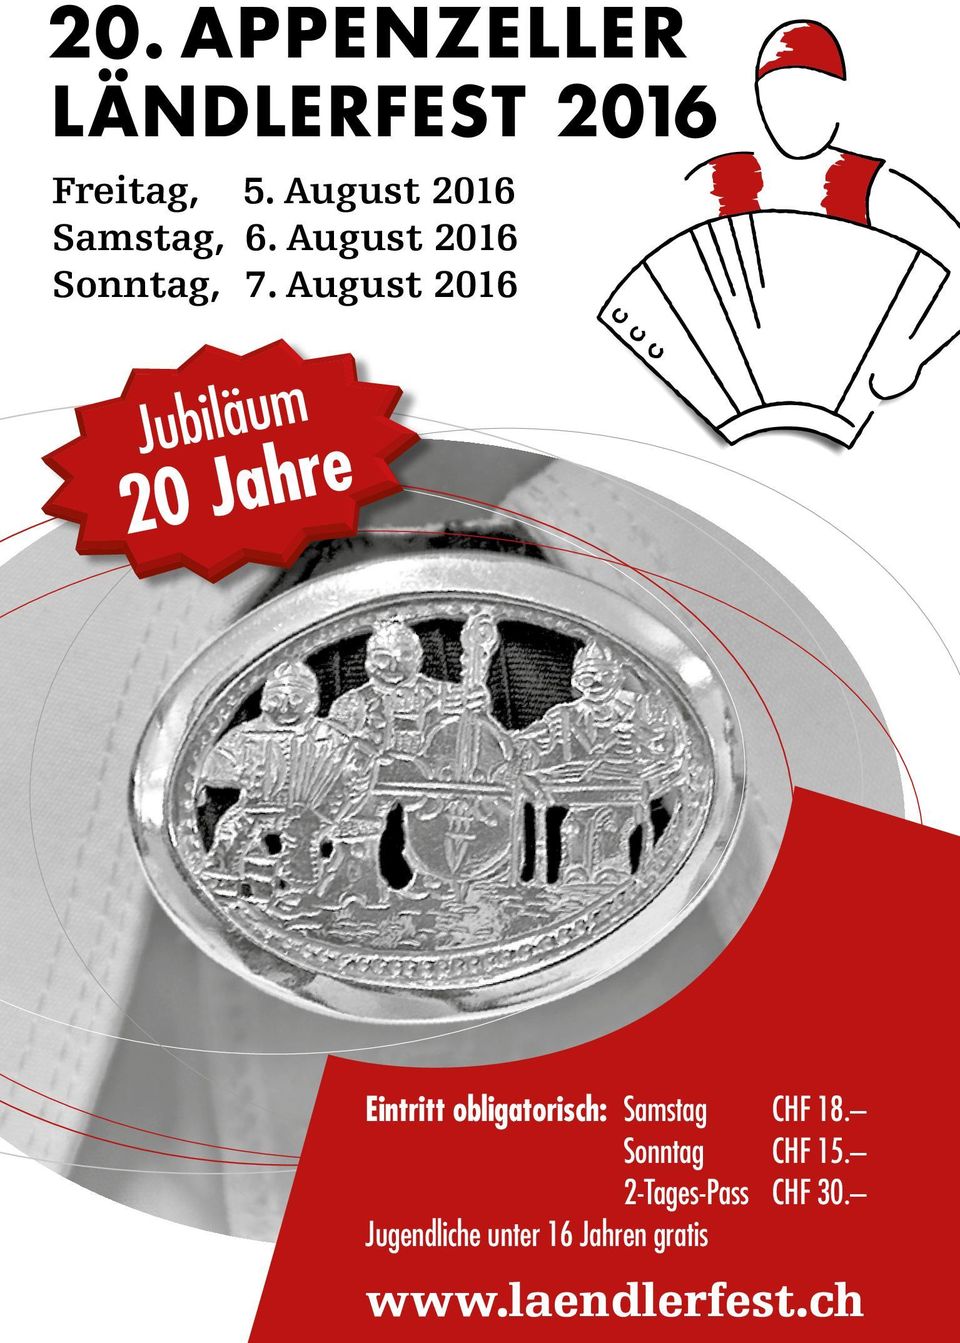 August 2016 Jubiläum 20 Jahre Eintritt obligatorisch: Samstag CHF